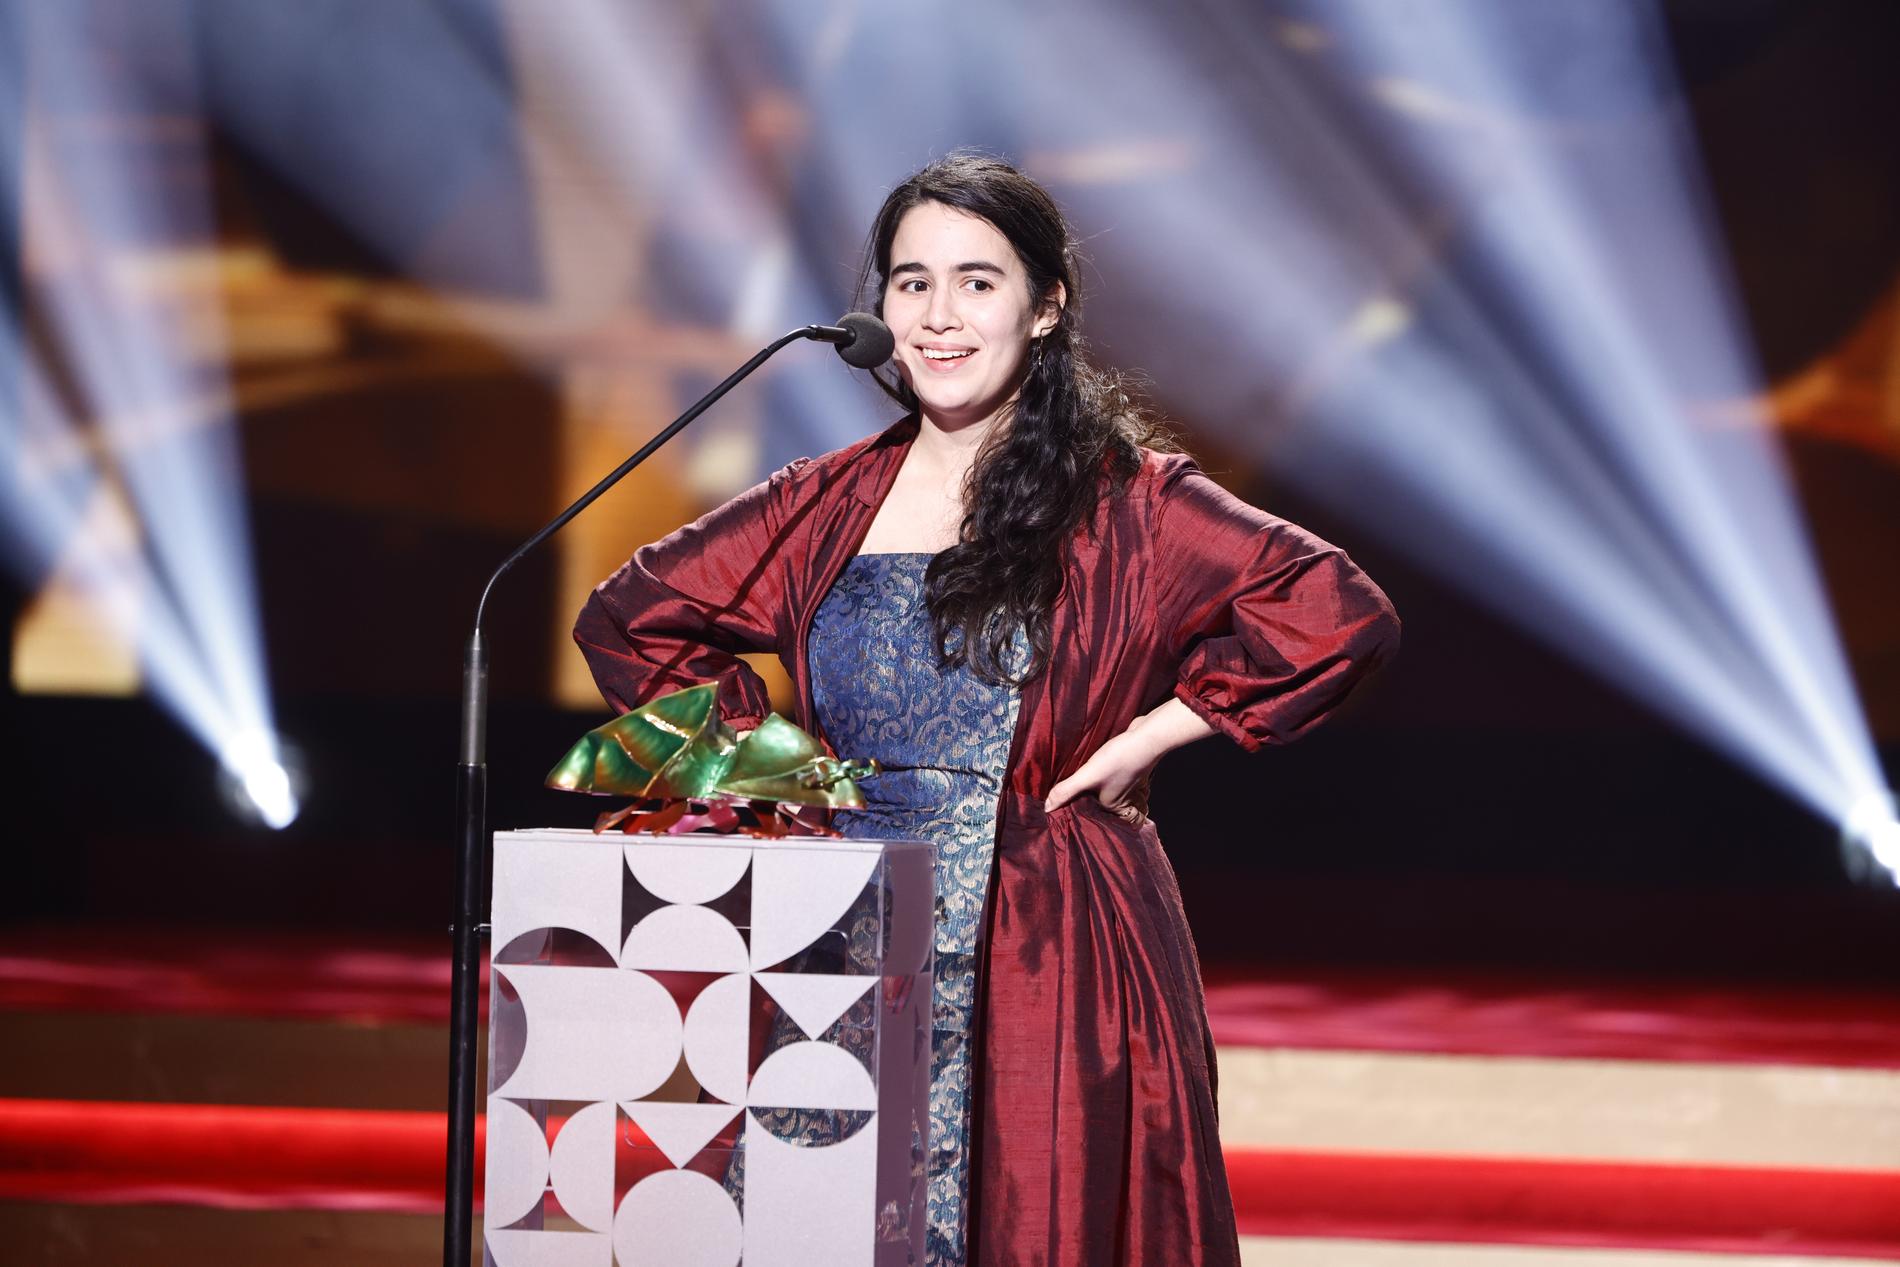 Nathalie Álvarez Mesén tar emot priset Bästa regi för filmen "Clara Sola" under Guldbaggegalan på Cirkus i Stockholm.